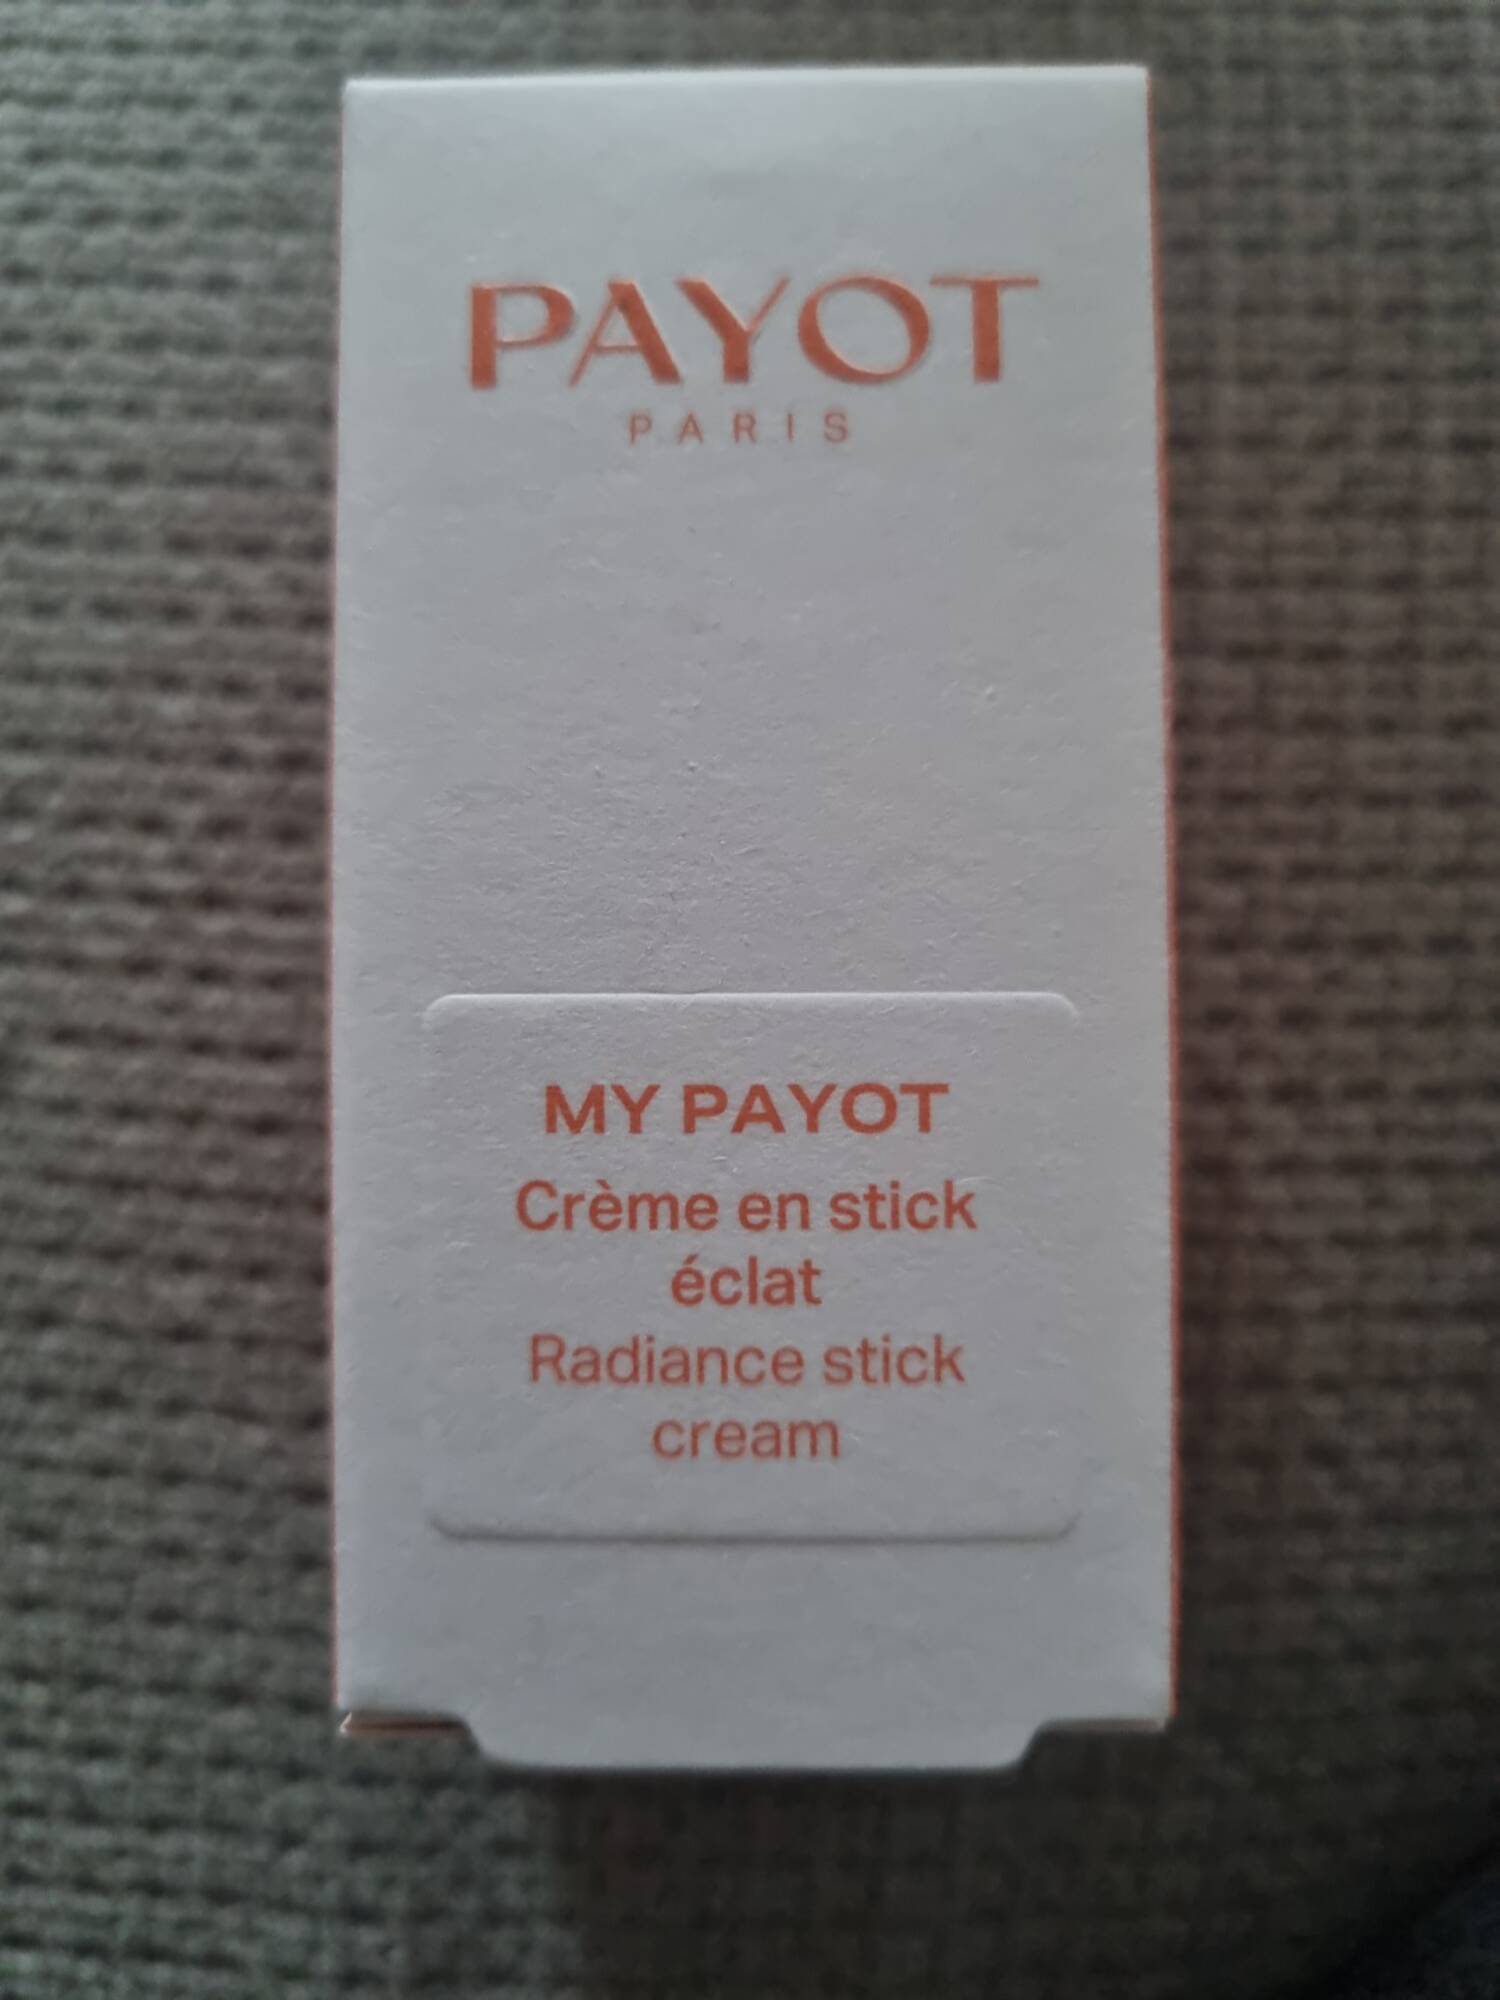 PAYOT - My payot - Crème en stick éclat